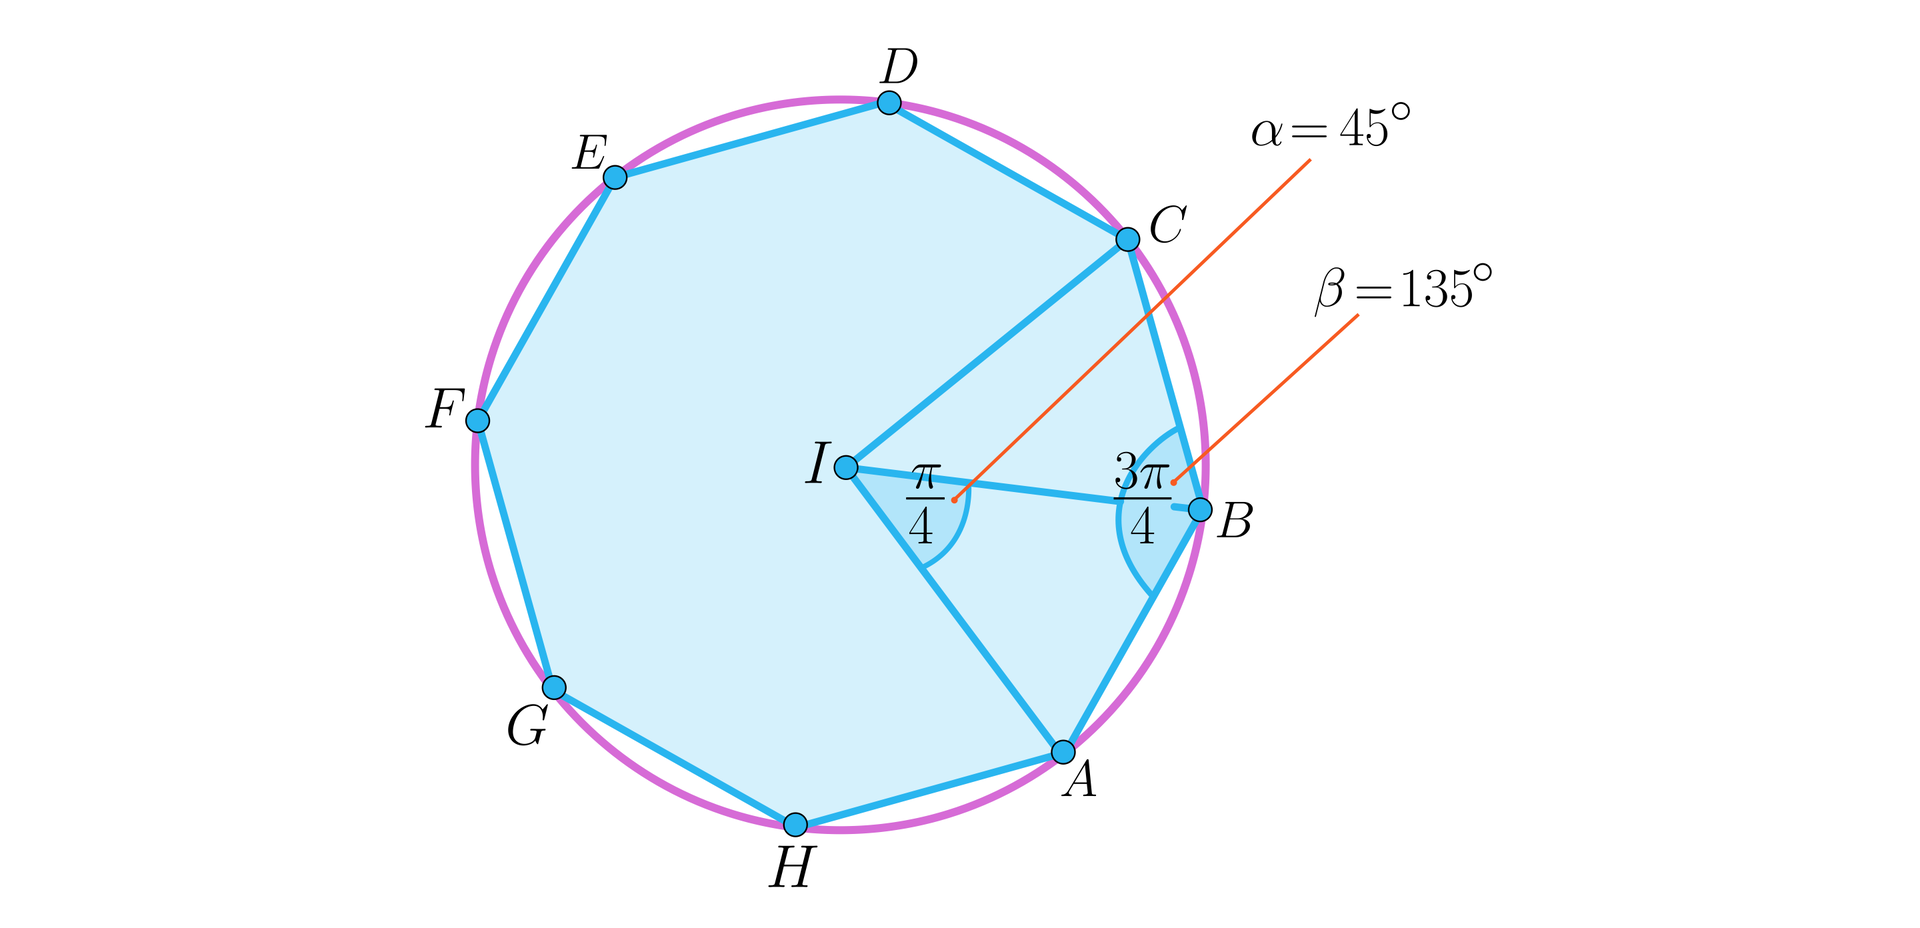 Rysunek przedstawia ośmiokąt foremny A B C D E F G H, na którym opisano okrąg o środku w punkcie I. Na ilustracji zaznaczono dwa kąty i kilka odcinków. Odcinki to: A I, B I oraz C I. Kąty to: kąt A I B ma miarę pi czwartych i jest opisany jako kąt alfa równy 45 stopni. Kąt A B C ma miarę trzy pi czwartych i jest opisany jako beta równe 135 stopni.